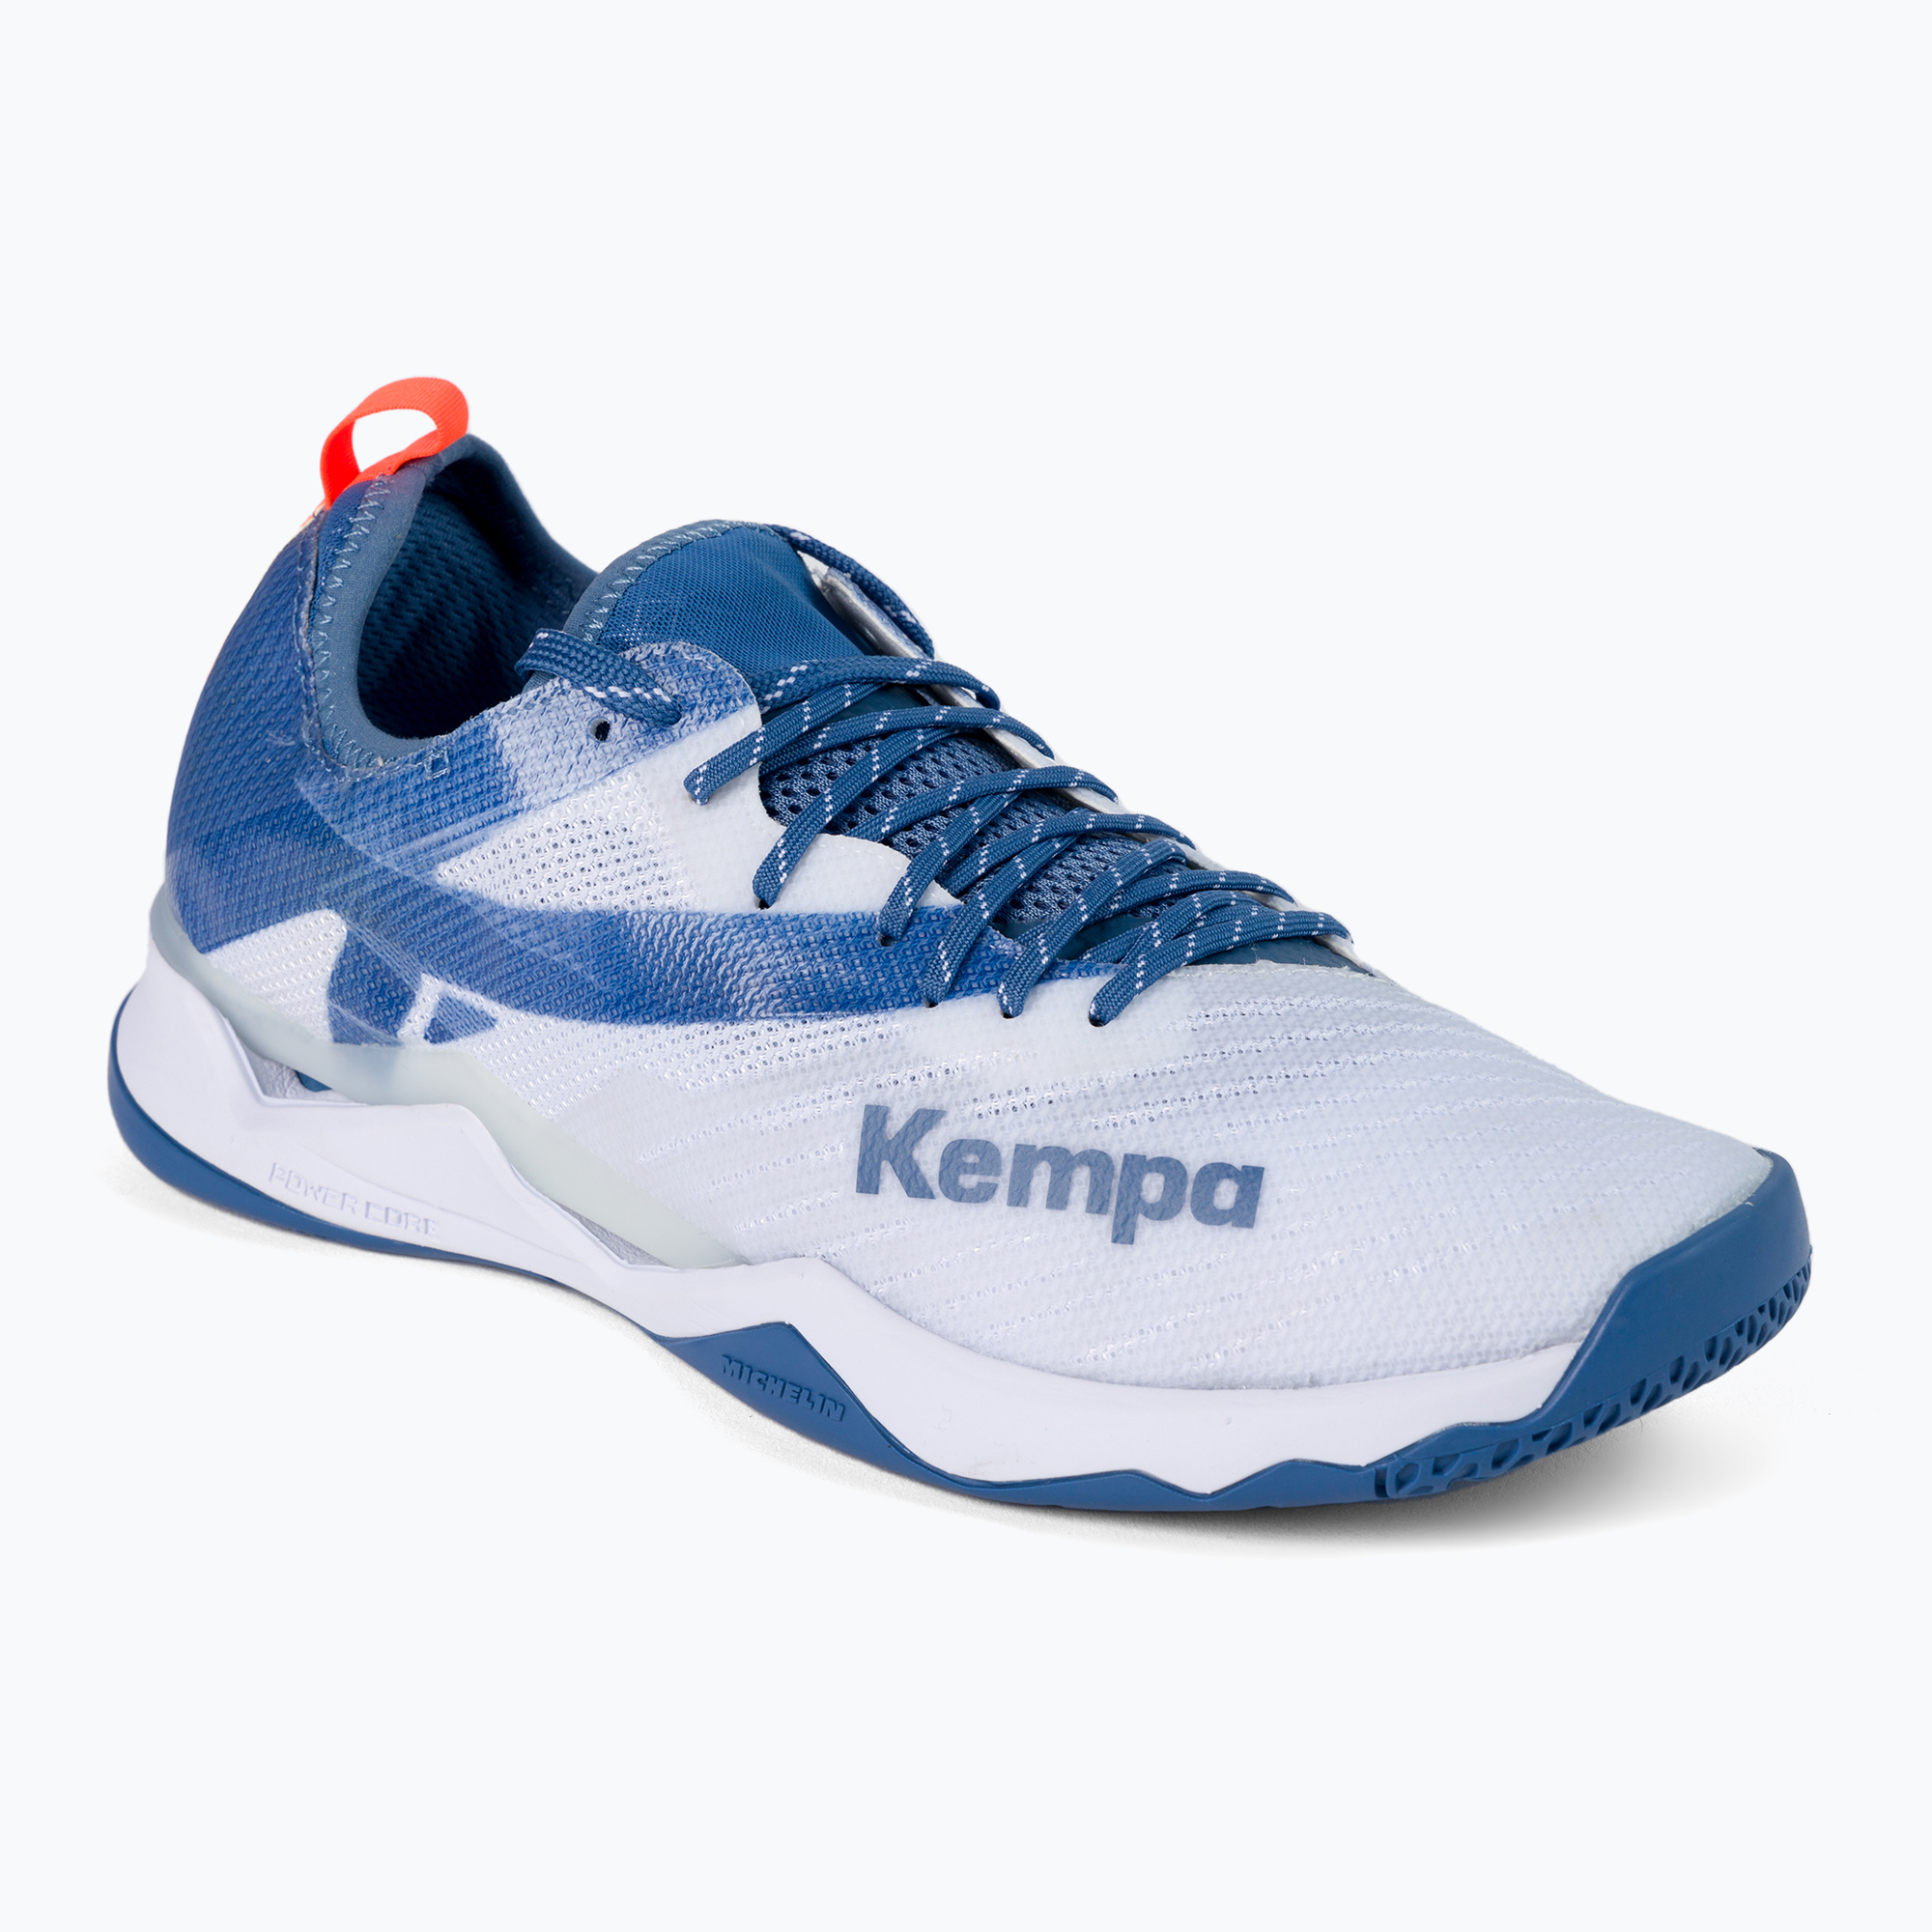 Kempa Wing Lite 2.0 pánska hádzanárska obuv biela a modrá 200852003